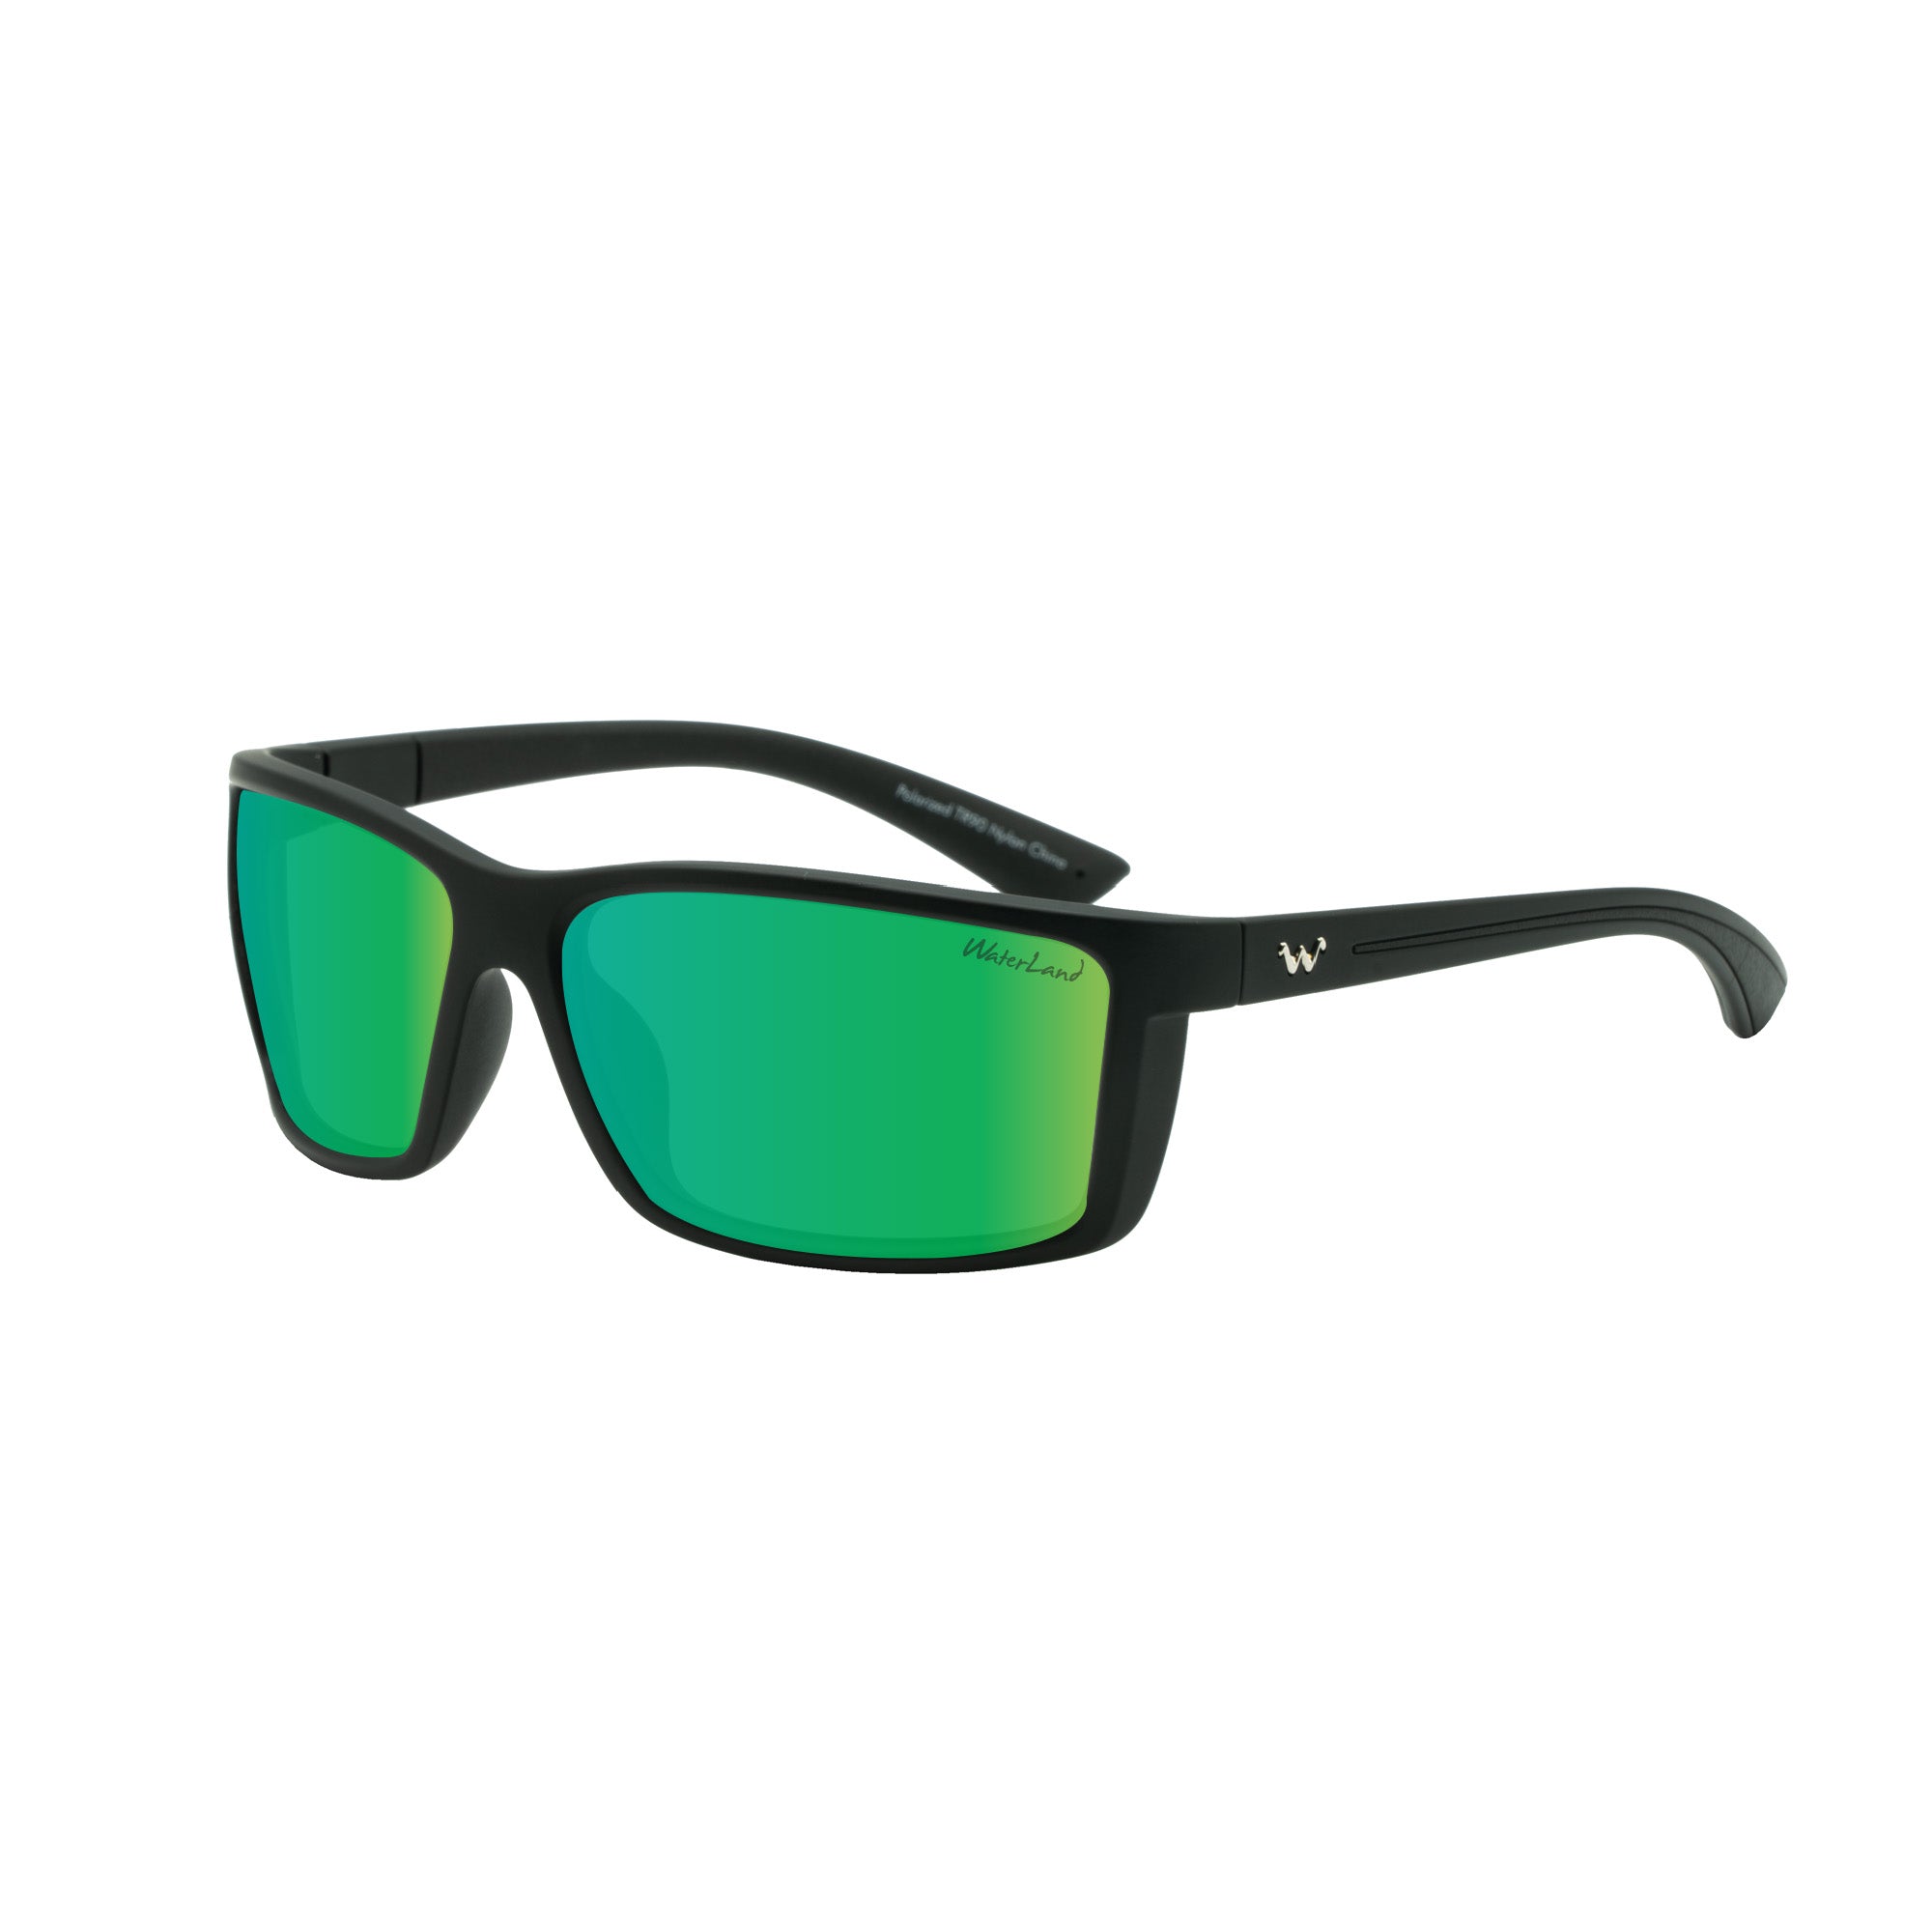 Waterland Fishing Sunglasses